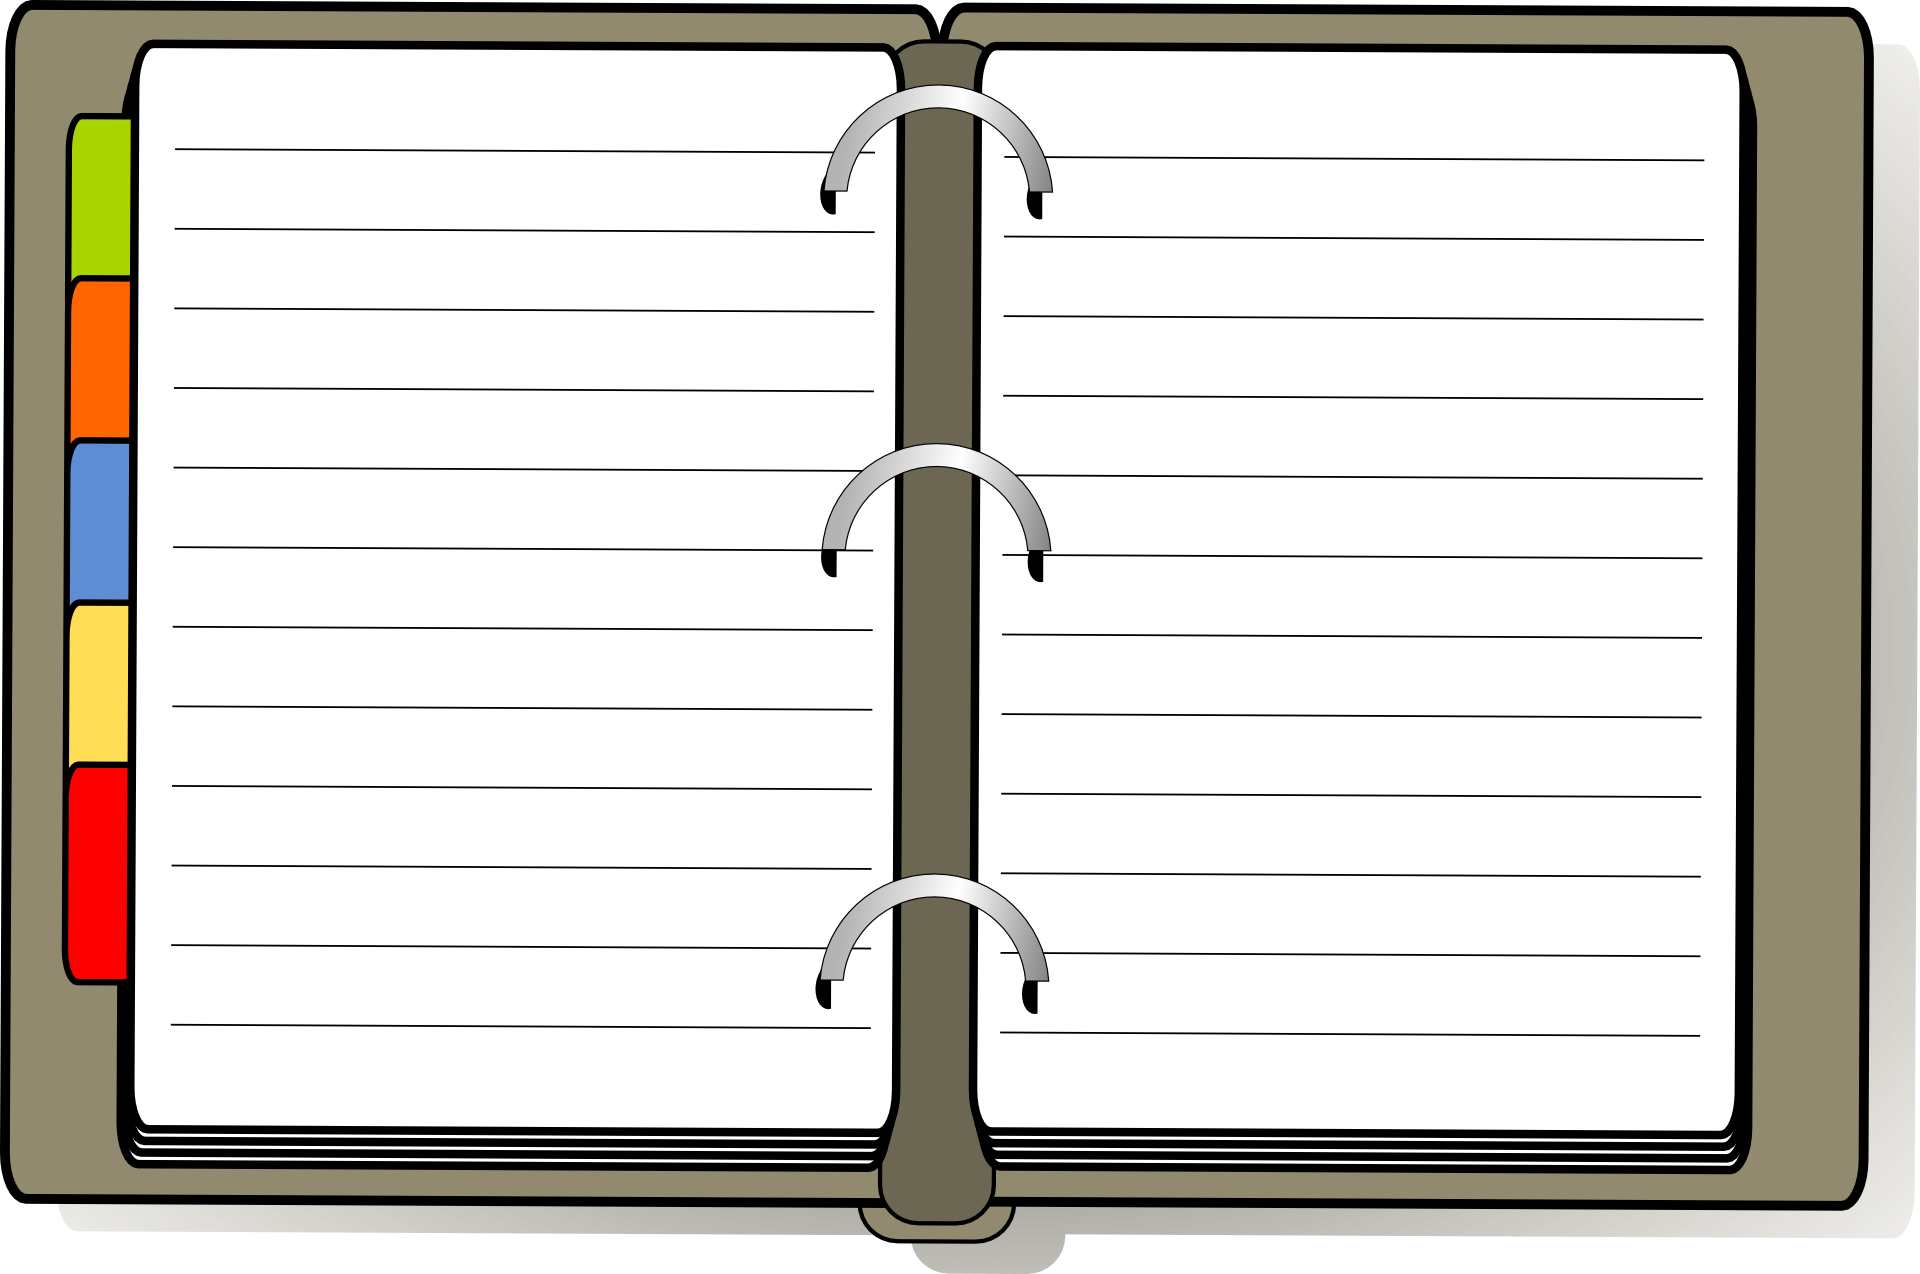 Diary pages. Лист блокнота. Открытый блокнот на прозрачном фоне. Лист блокнота на прозрачном фоне. Ежедневник без фона.